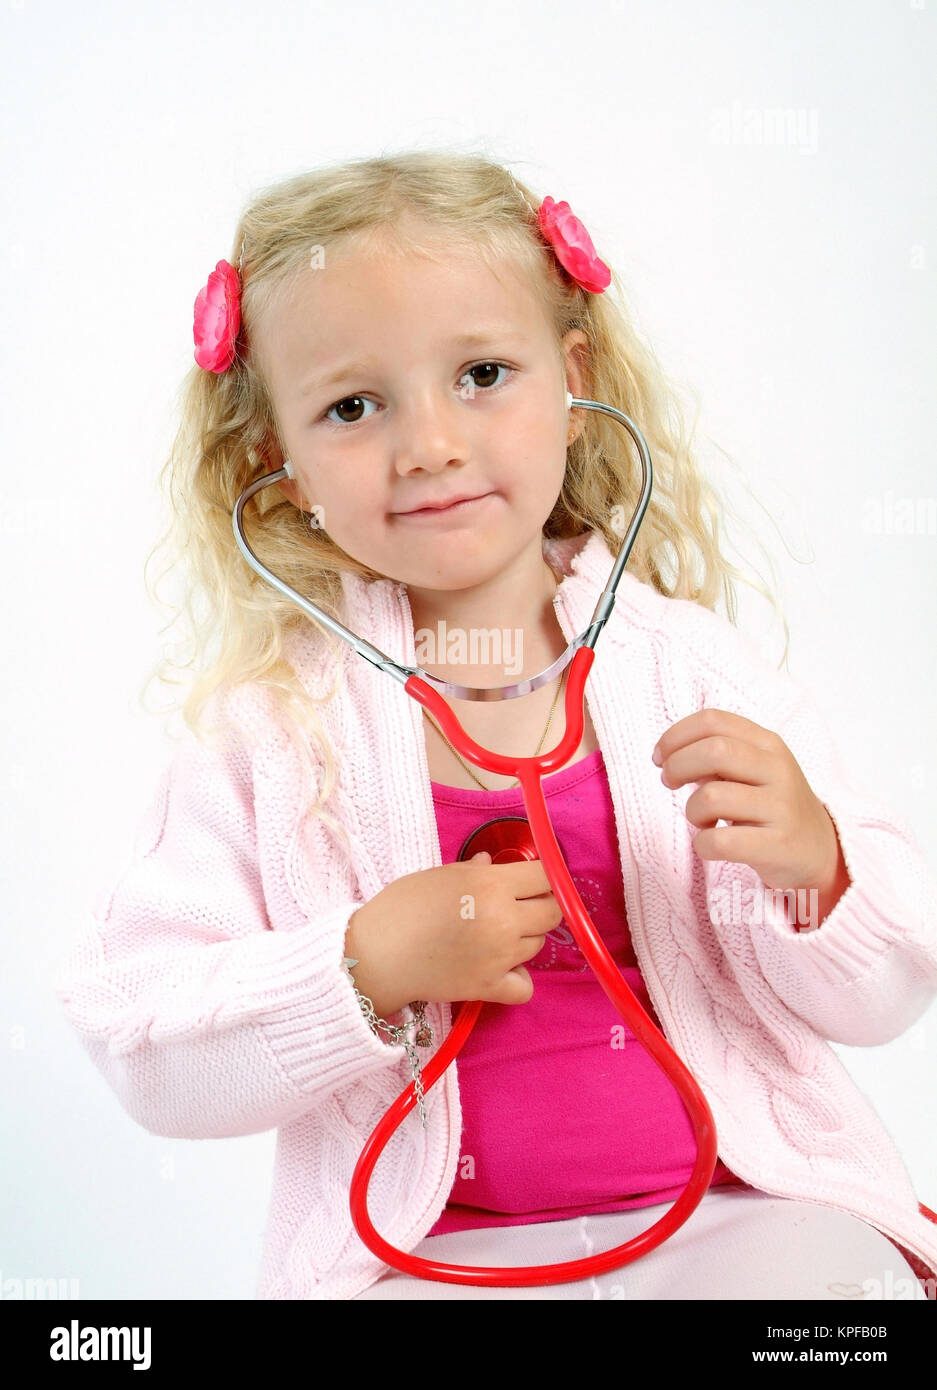 Kleines Maedchen mit Stethoskop - girl with stethoscope Stock Photo